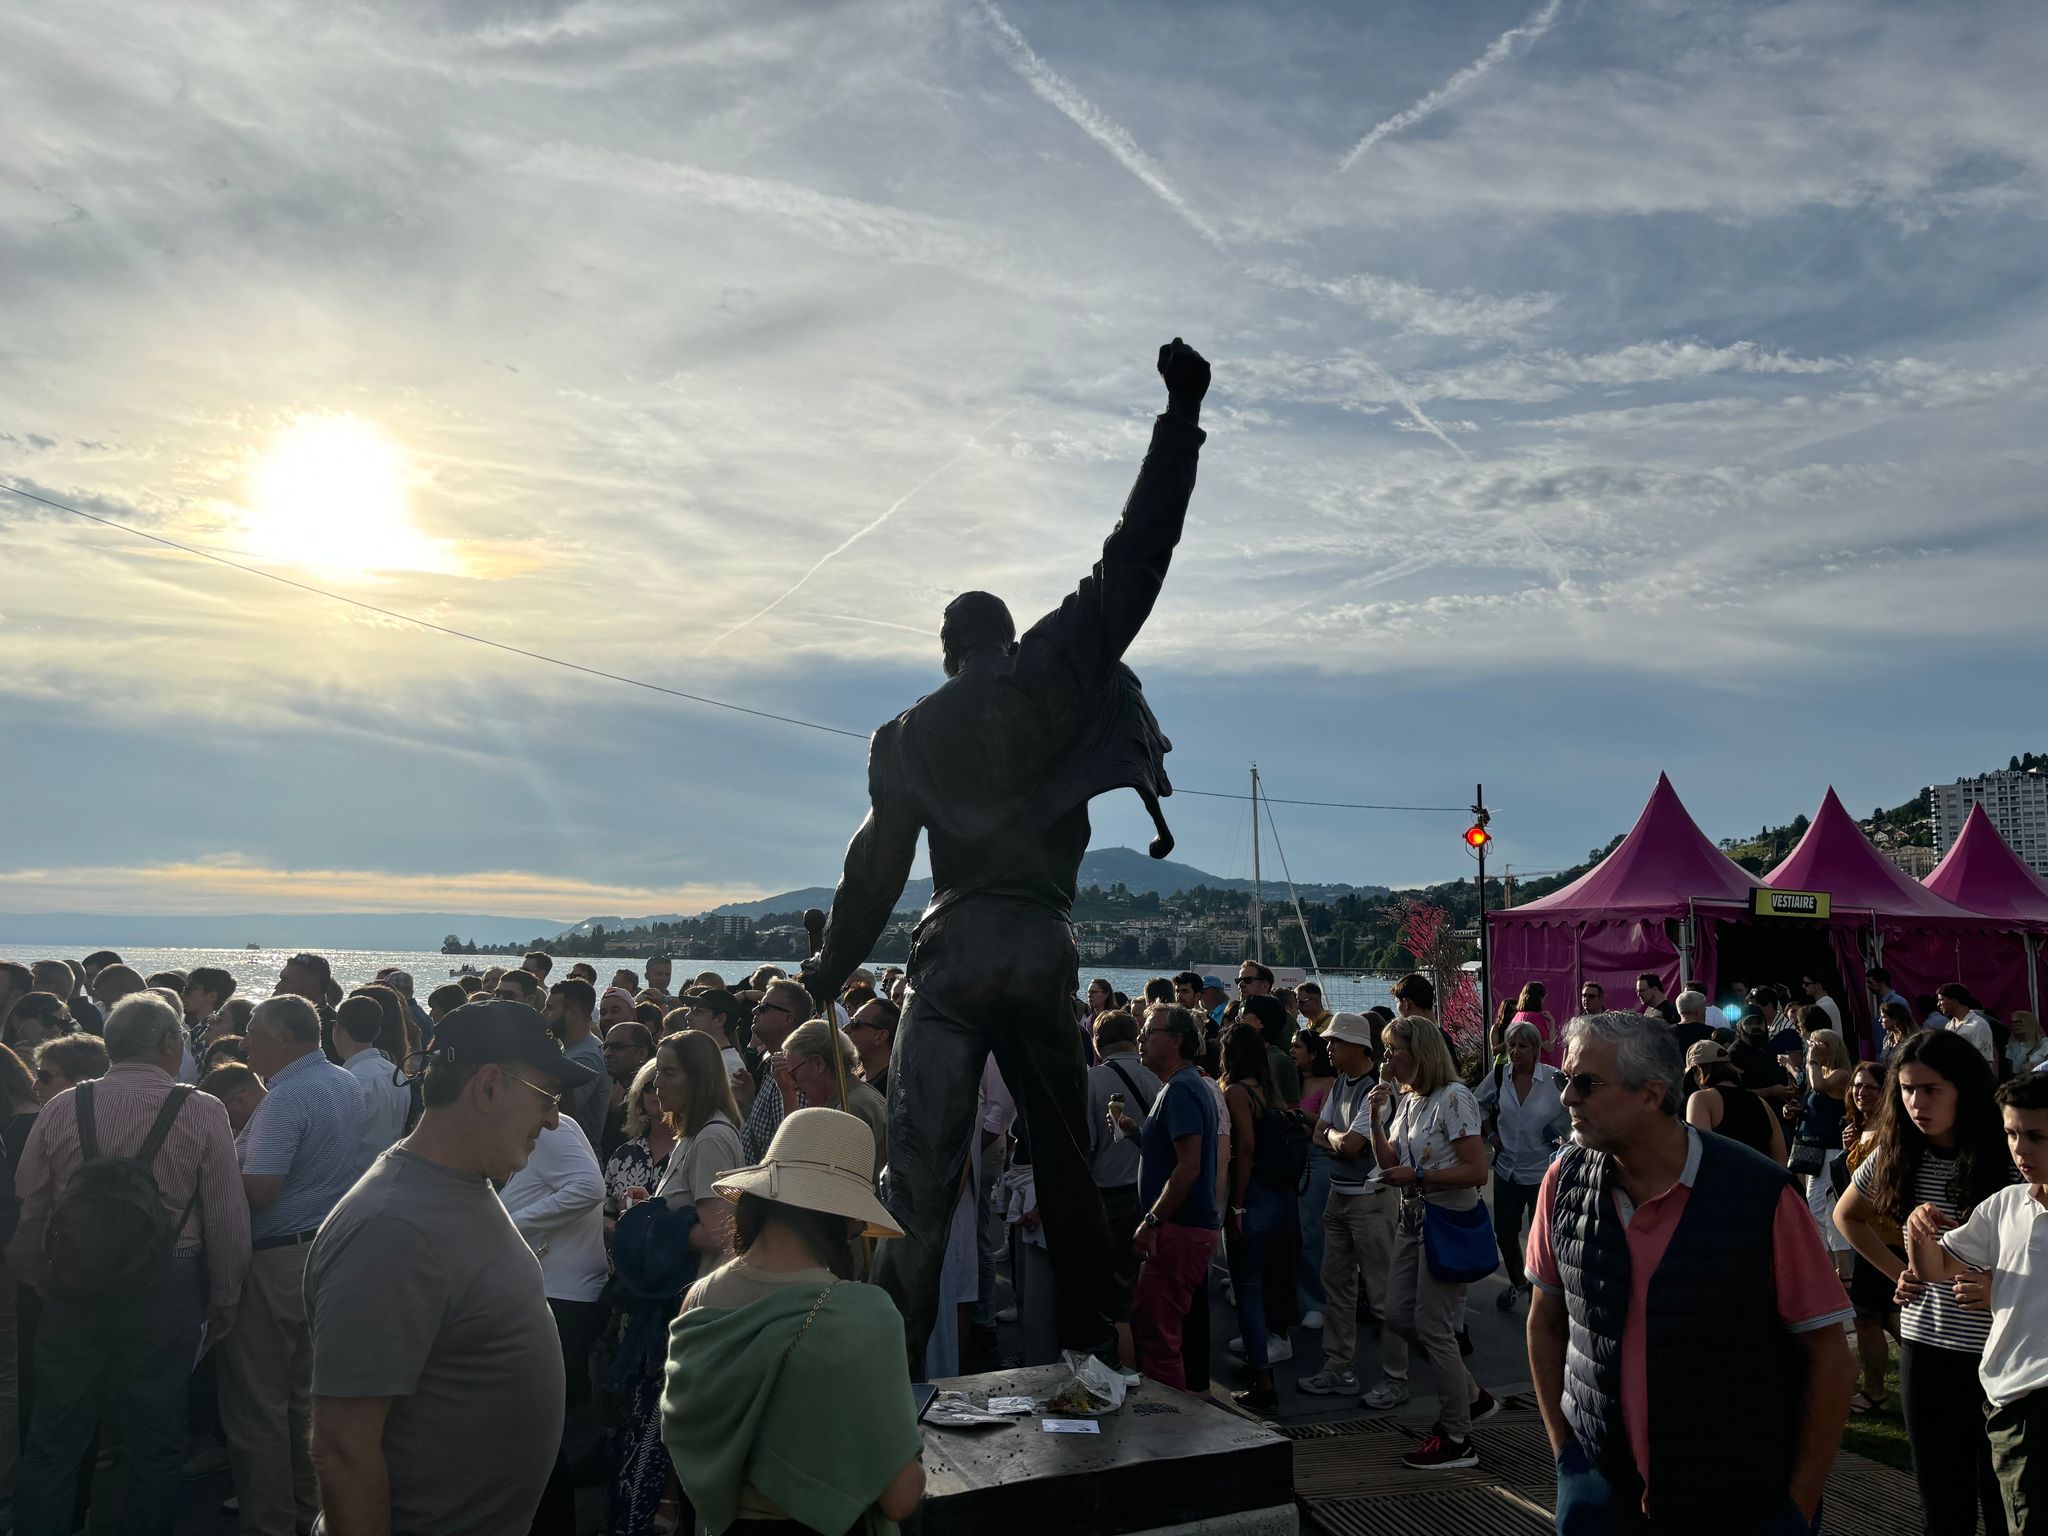 Besucher drängen sich am Denkmal für einen der berühmtesten Montreux-Besucher, Freddie Mercury, vor dem Eingang der Seebühne. Foto: Christiane Oelrich/dpa